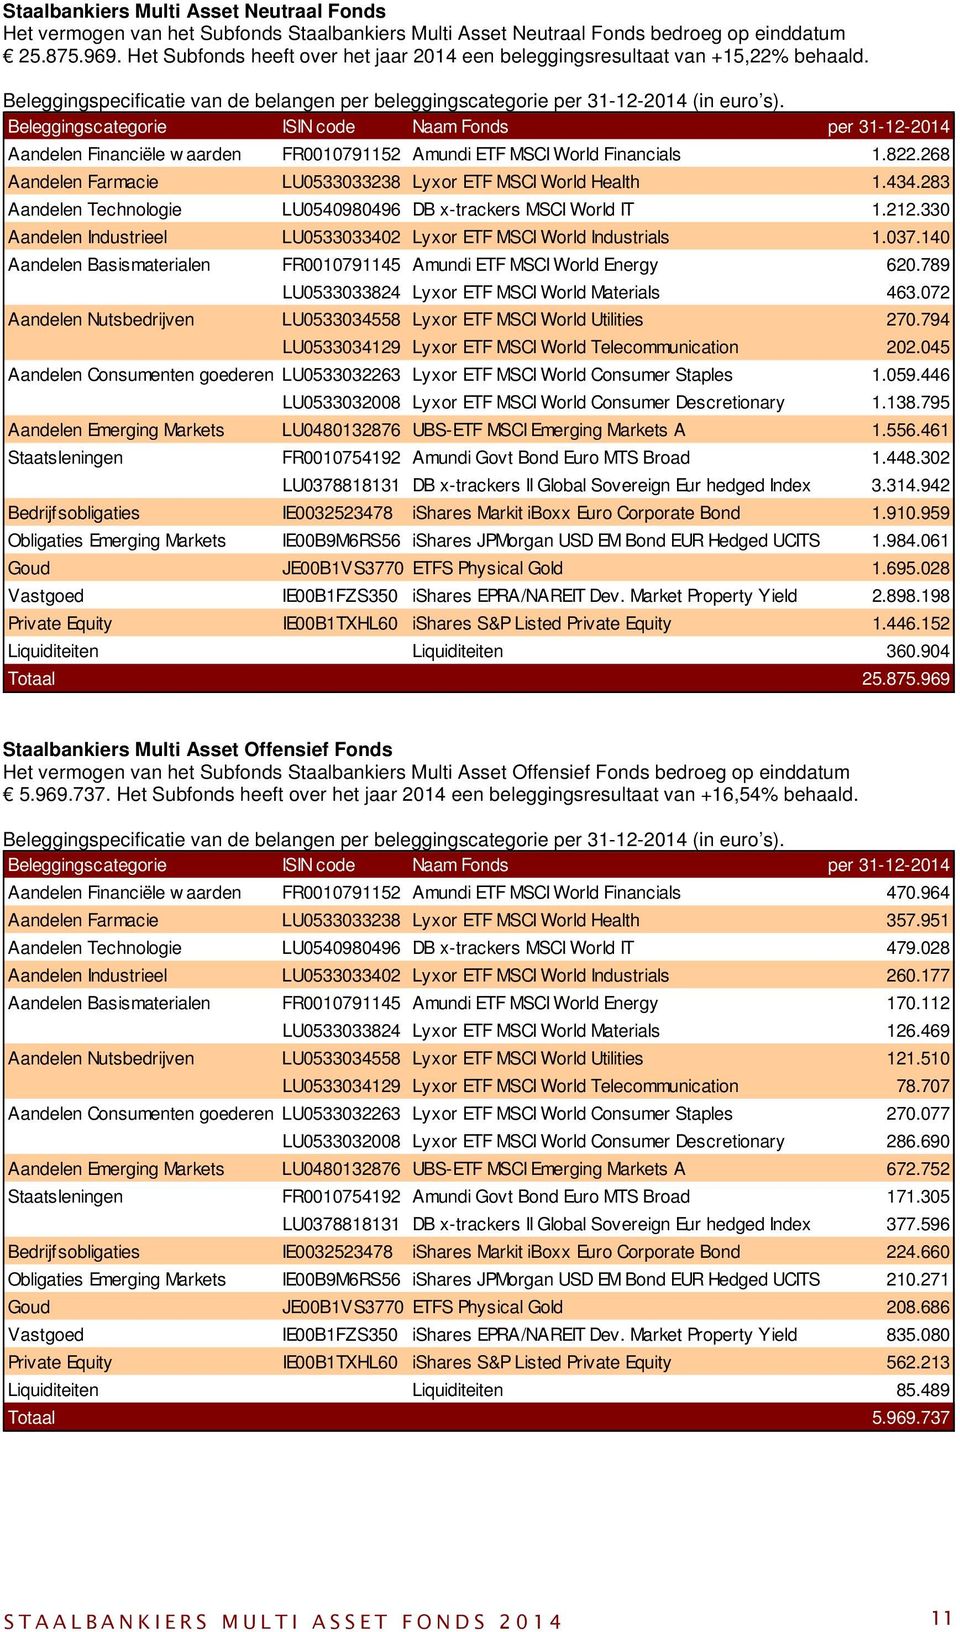 Beleggingscategorie ISIN code Naam Fonds per 31-12-2014 Aandelen Financiële w aarden FR0010791152 Amundi ETF MSCI World Financials 1.822.